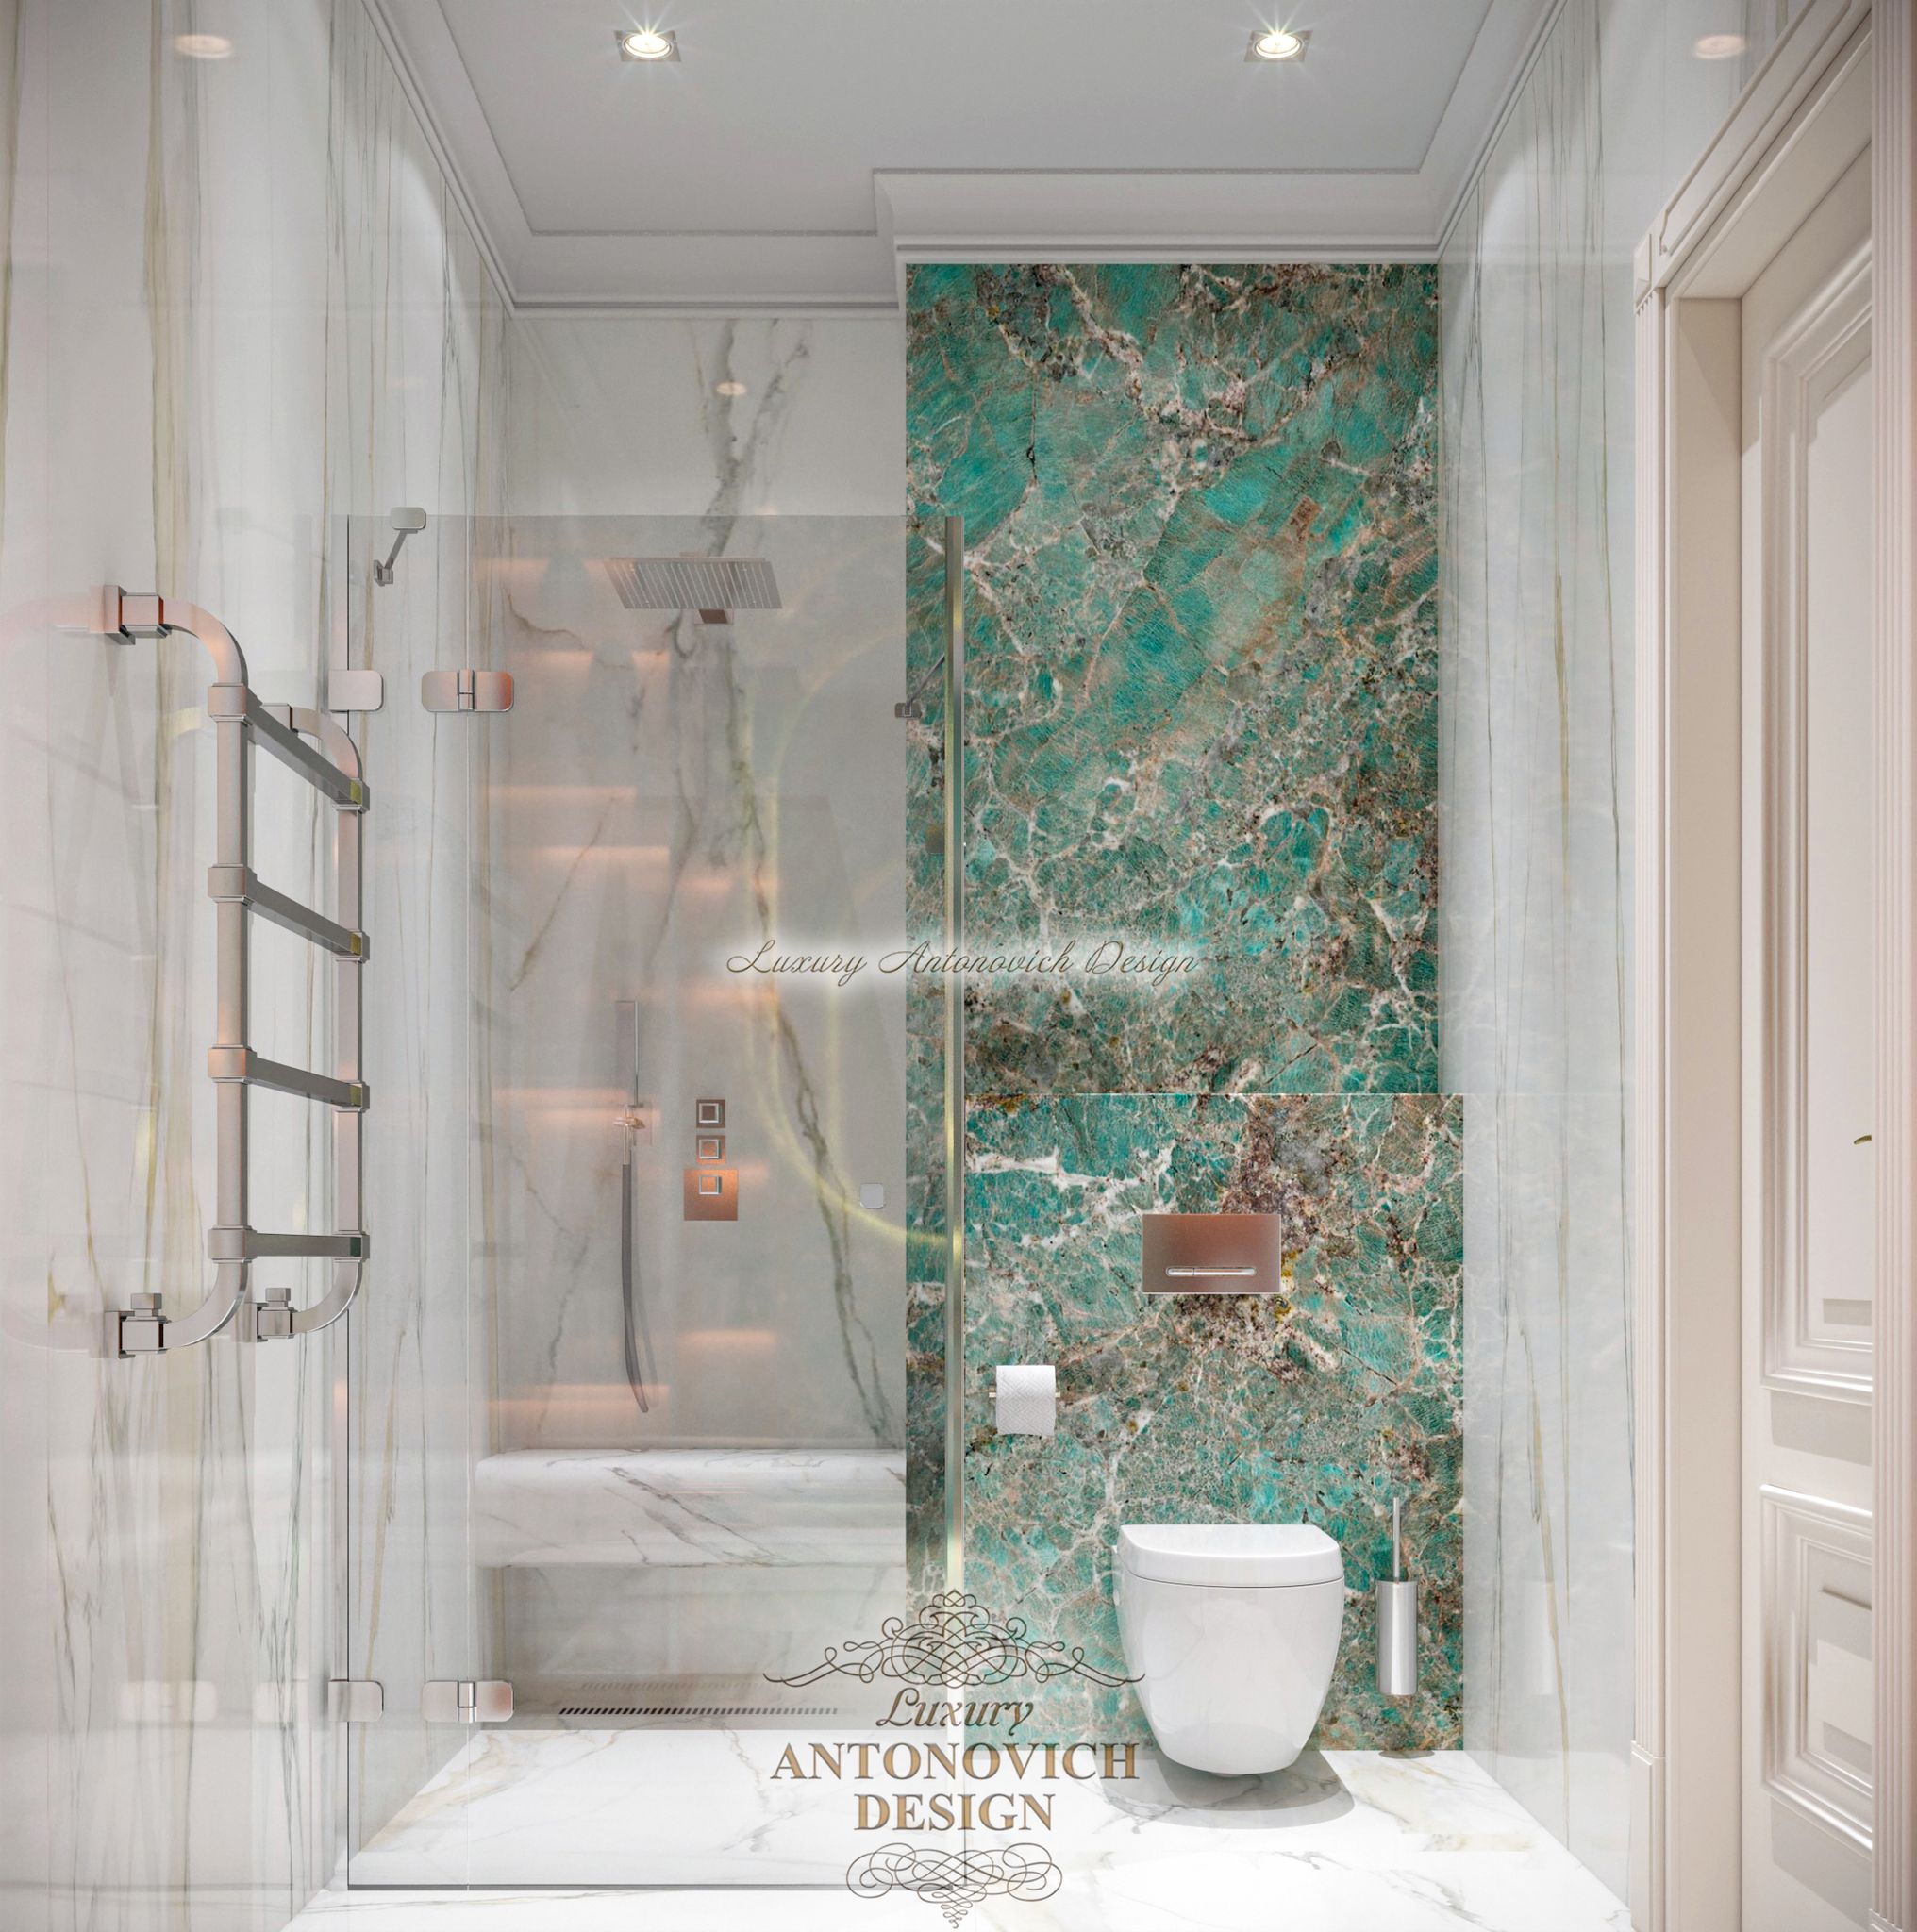 зелёный мрамор, мрамор в декор ванной, стены из мрамора, стеклянная душевая, антонович дизайн